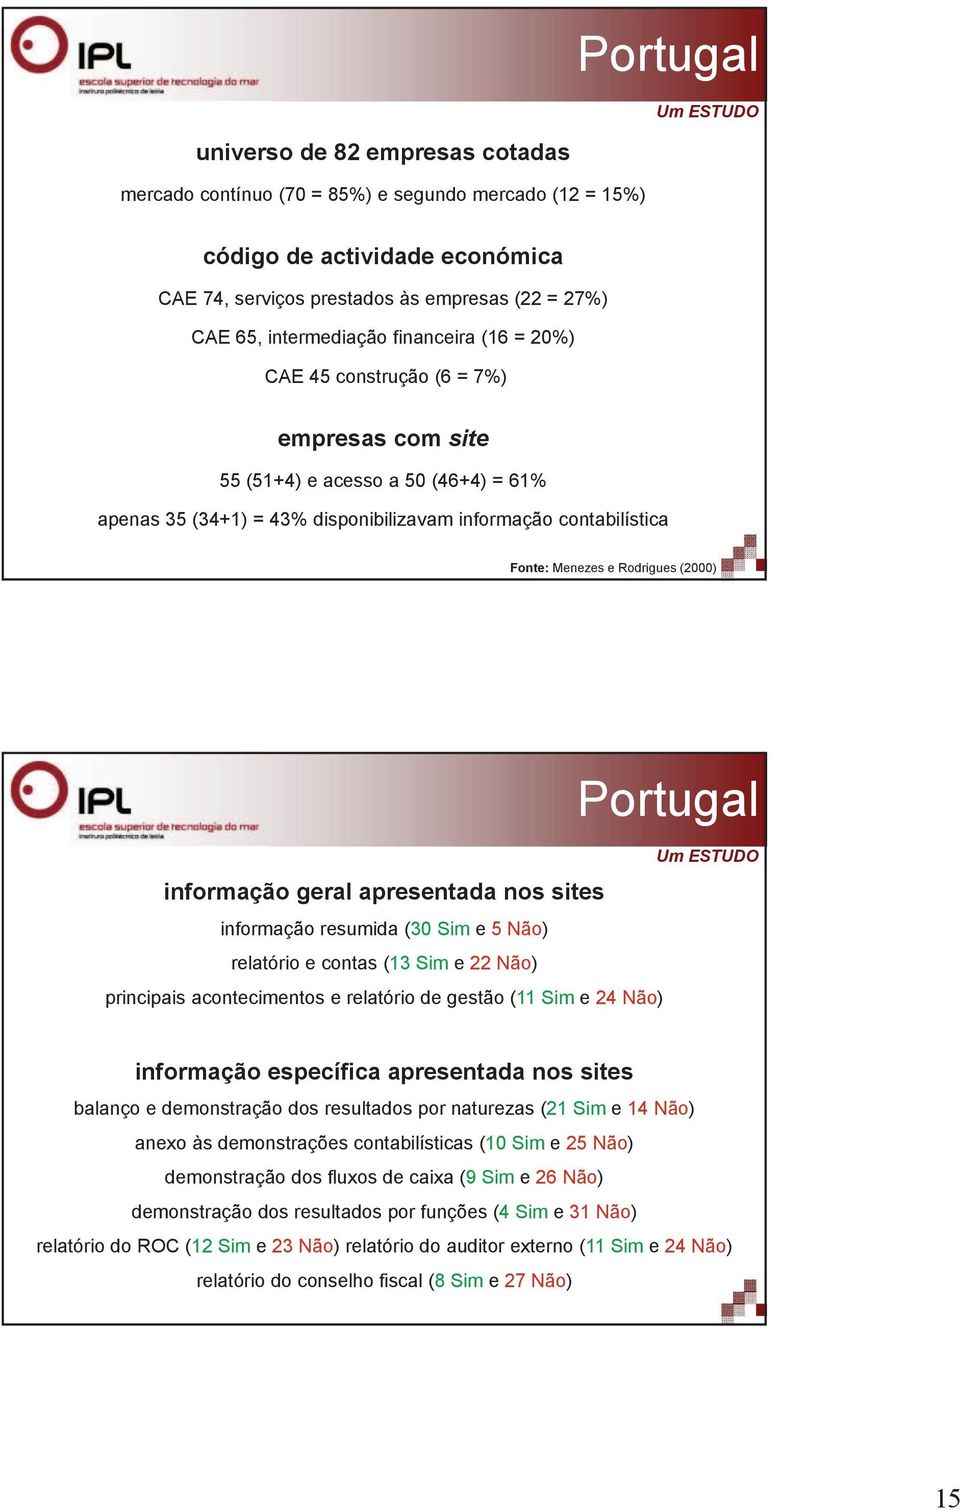 e Rodrigues (2000) Portugal informação geral apresentada nos sites informação resumida (30 Sim e 5 Não) relatório e contas (13 Sim e 22 Não) principais acontecimentos e relatório de gestão (11 Sim e